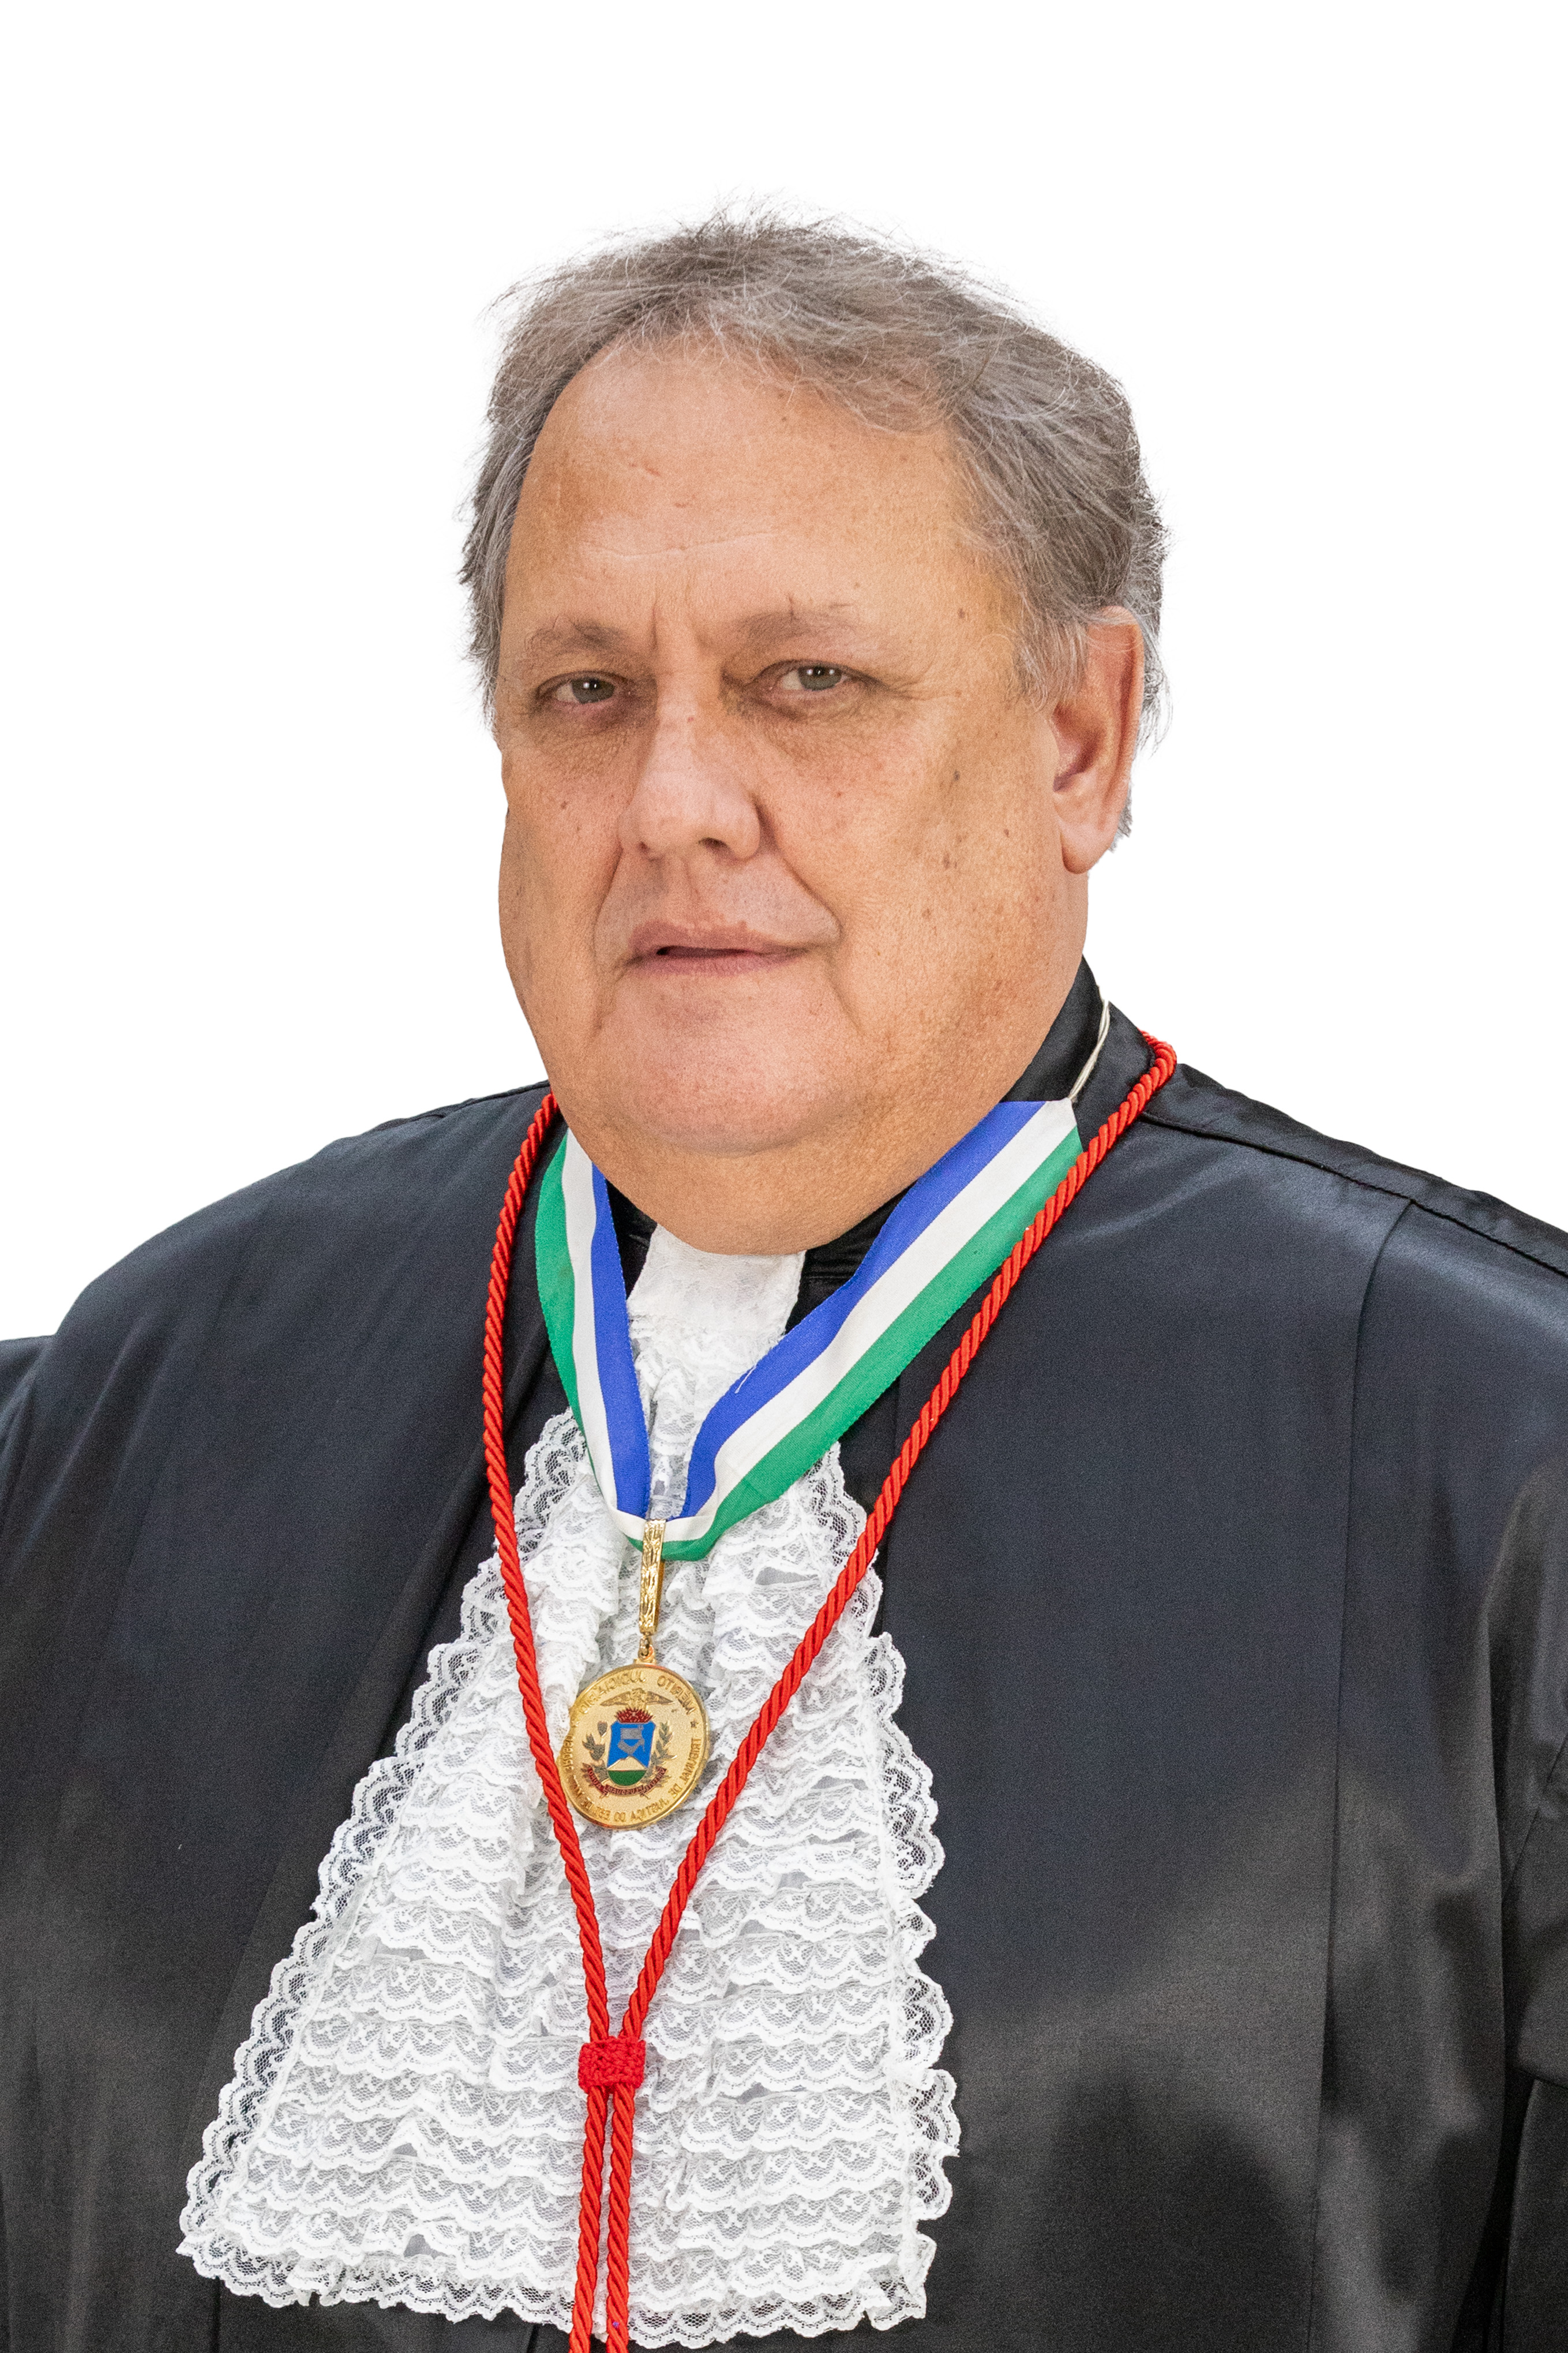 Rui Ramos Ribeiro